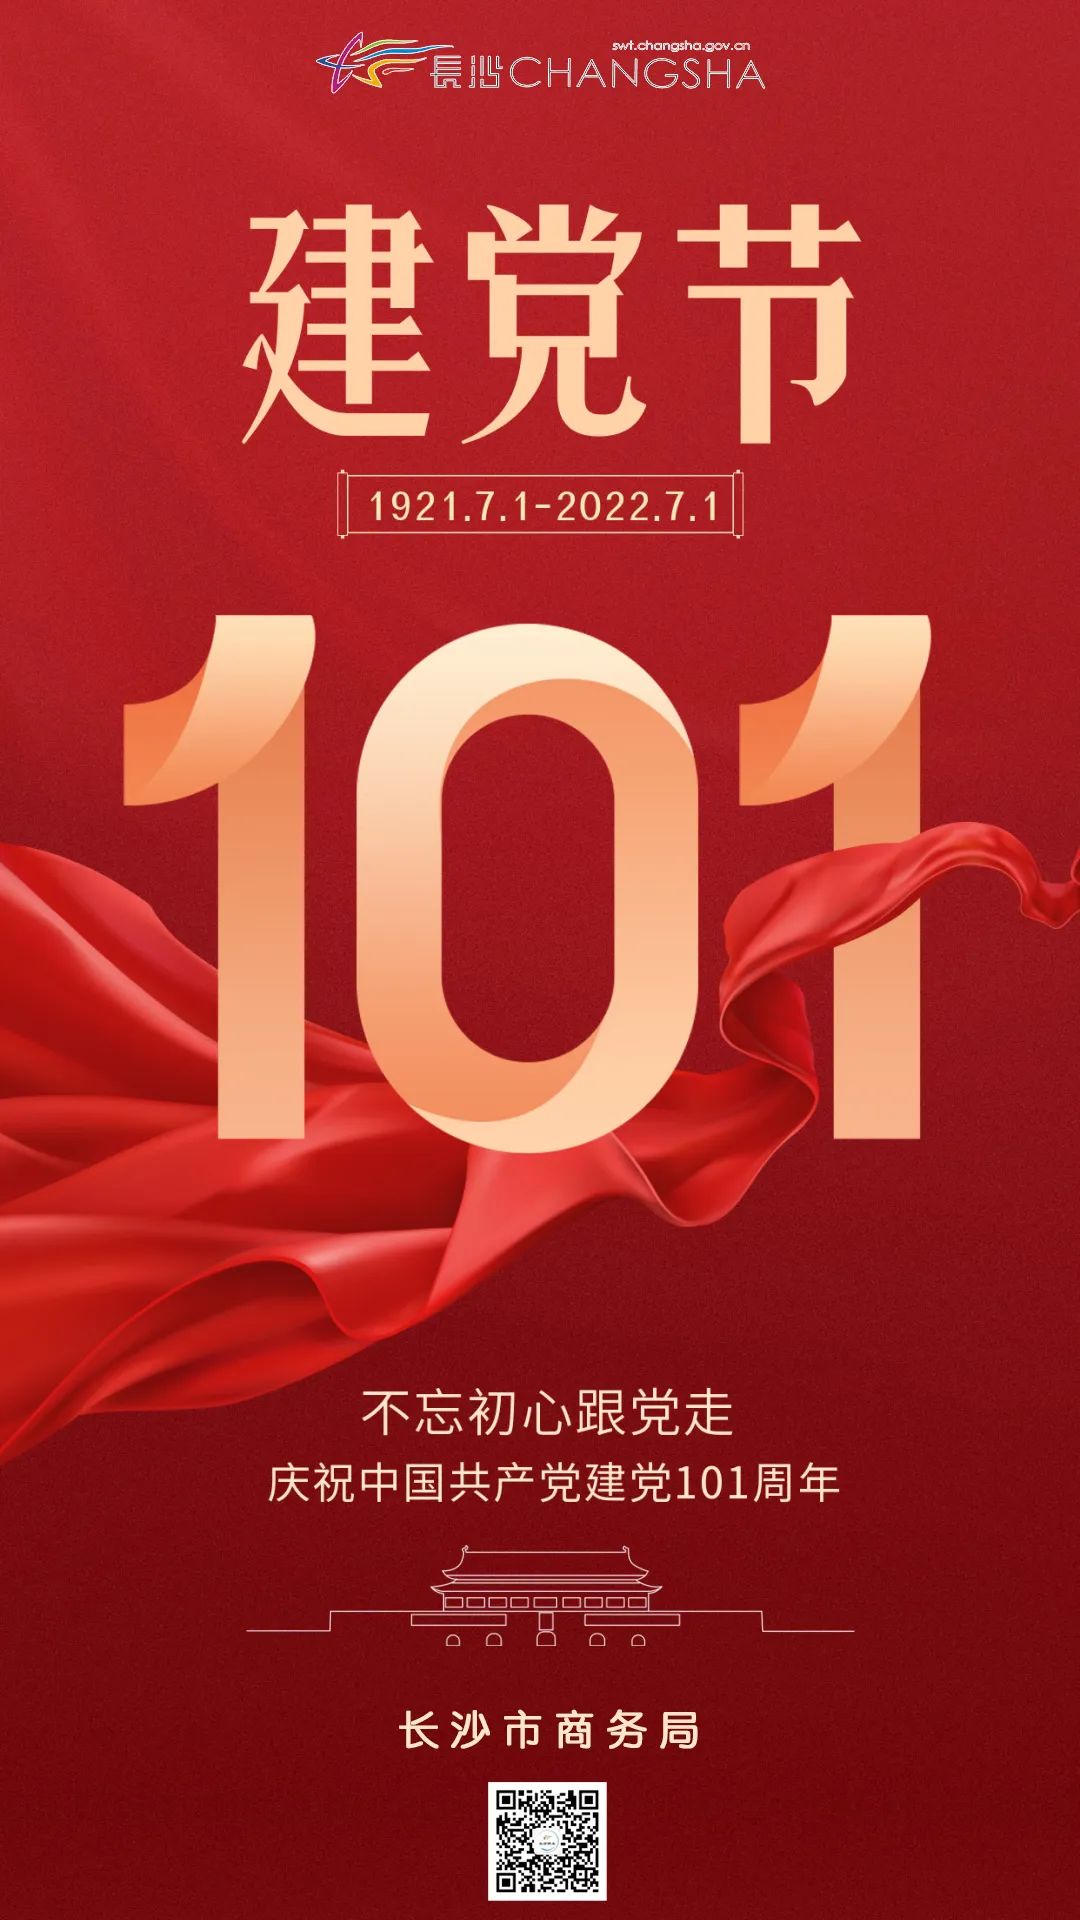 不忘初心跟党走，庆祝中国共产党建党101周年